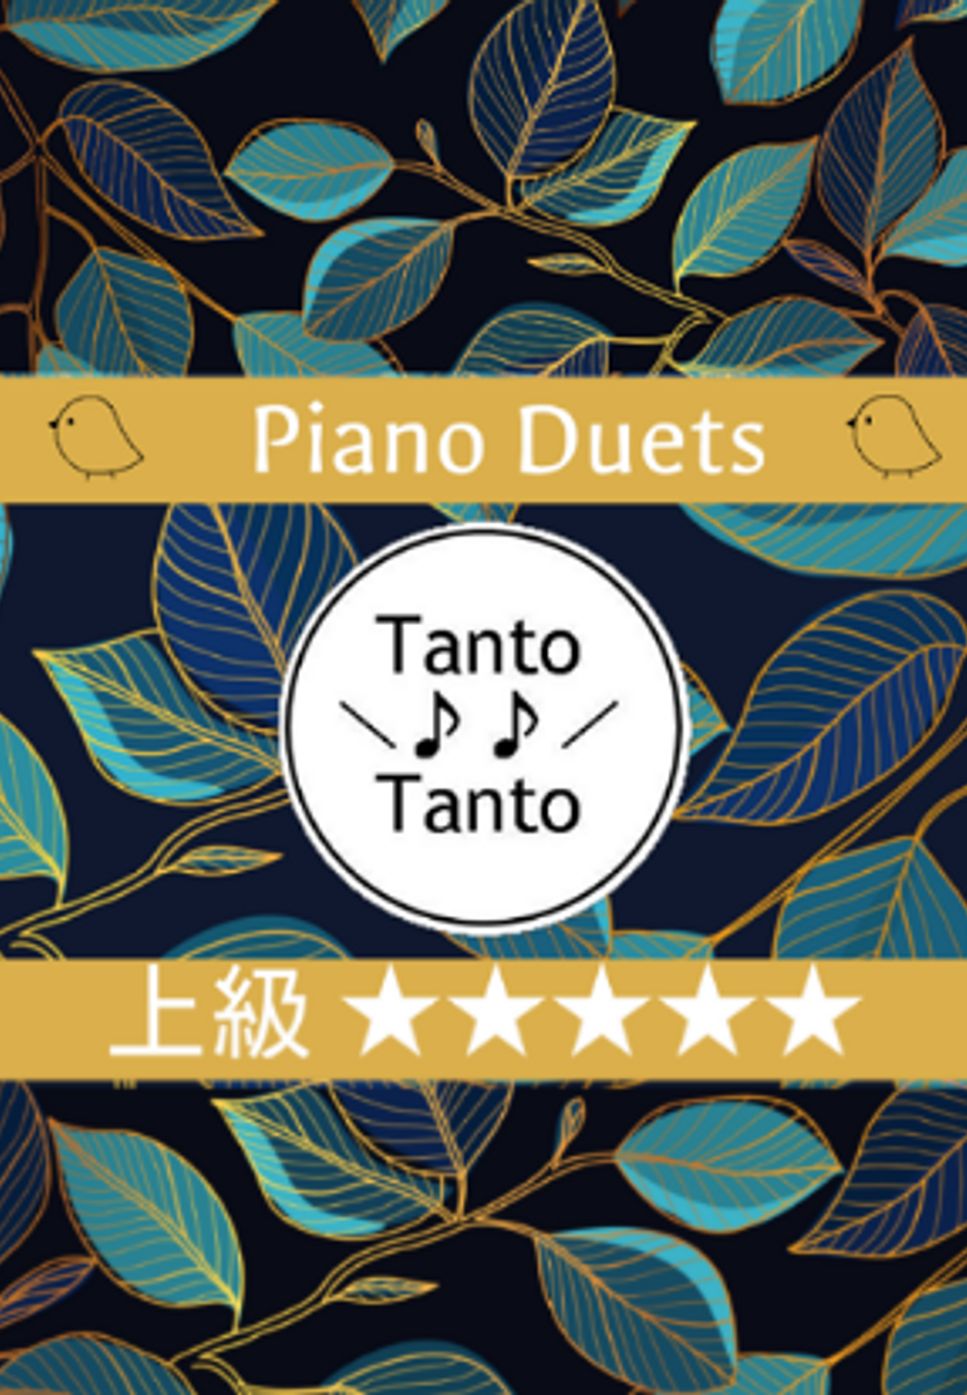 大野 雄二 - ルパン三世のテーマ‘80 THEME FROM LUPIN Ⅲ '80 (Piano Duets in Gm) by Tanto Tanto